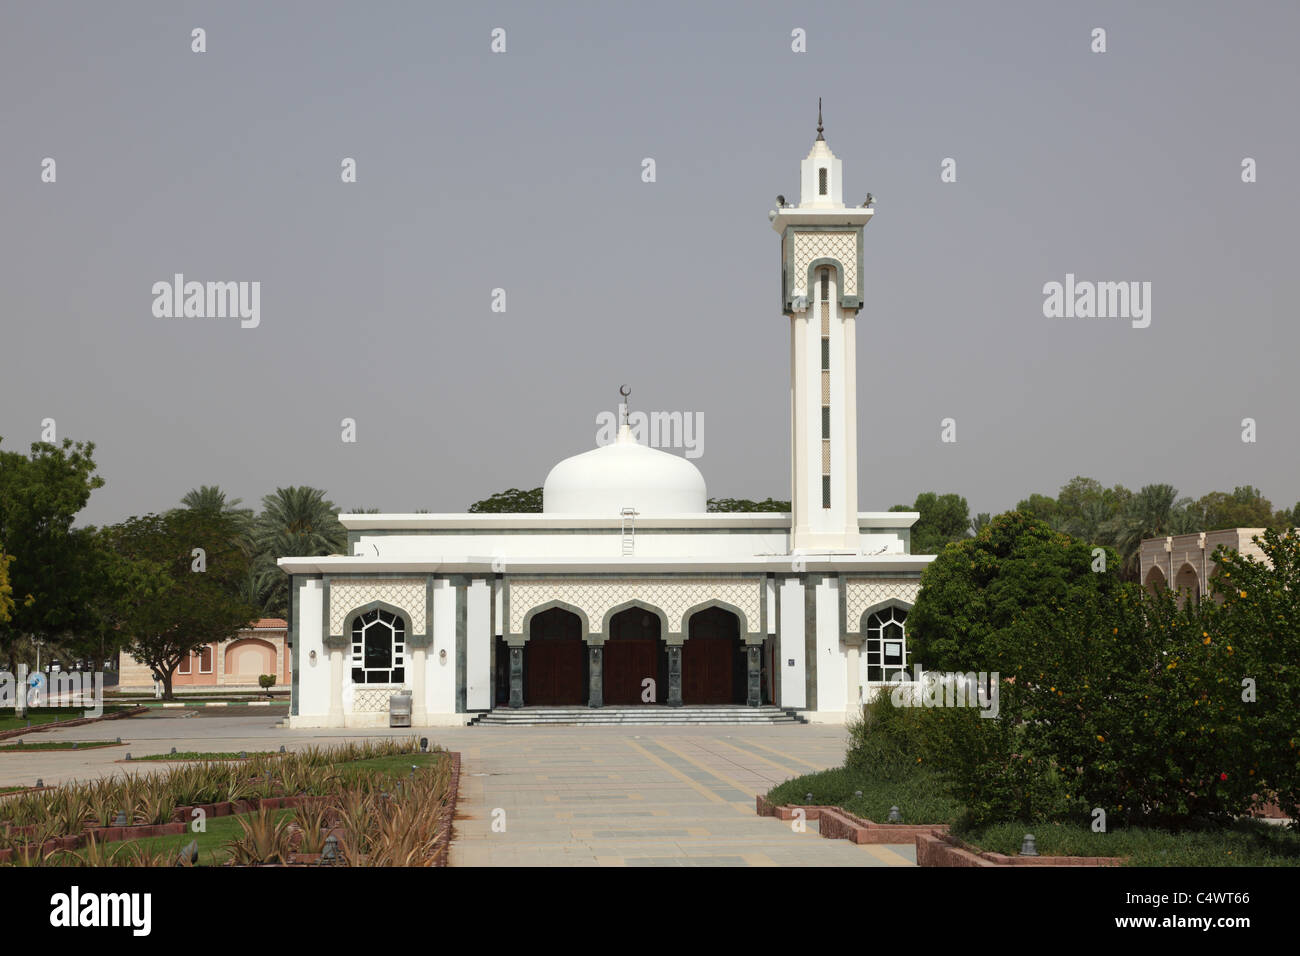 Weiße Moschee in Al Ain, Abu Dhabi Vereinigte Arabische Emirate Stockfoto